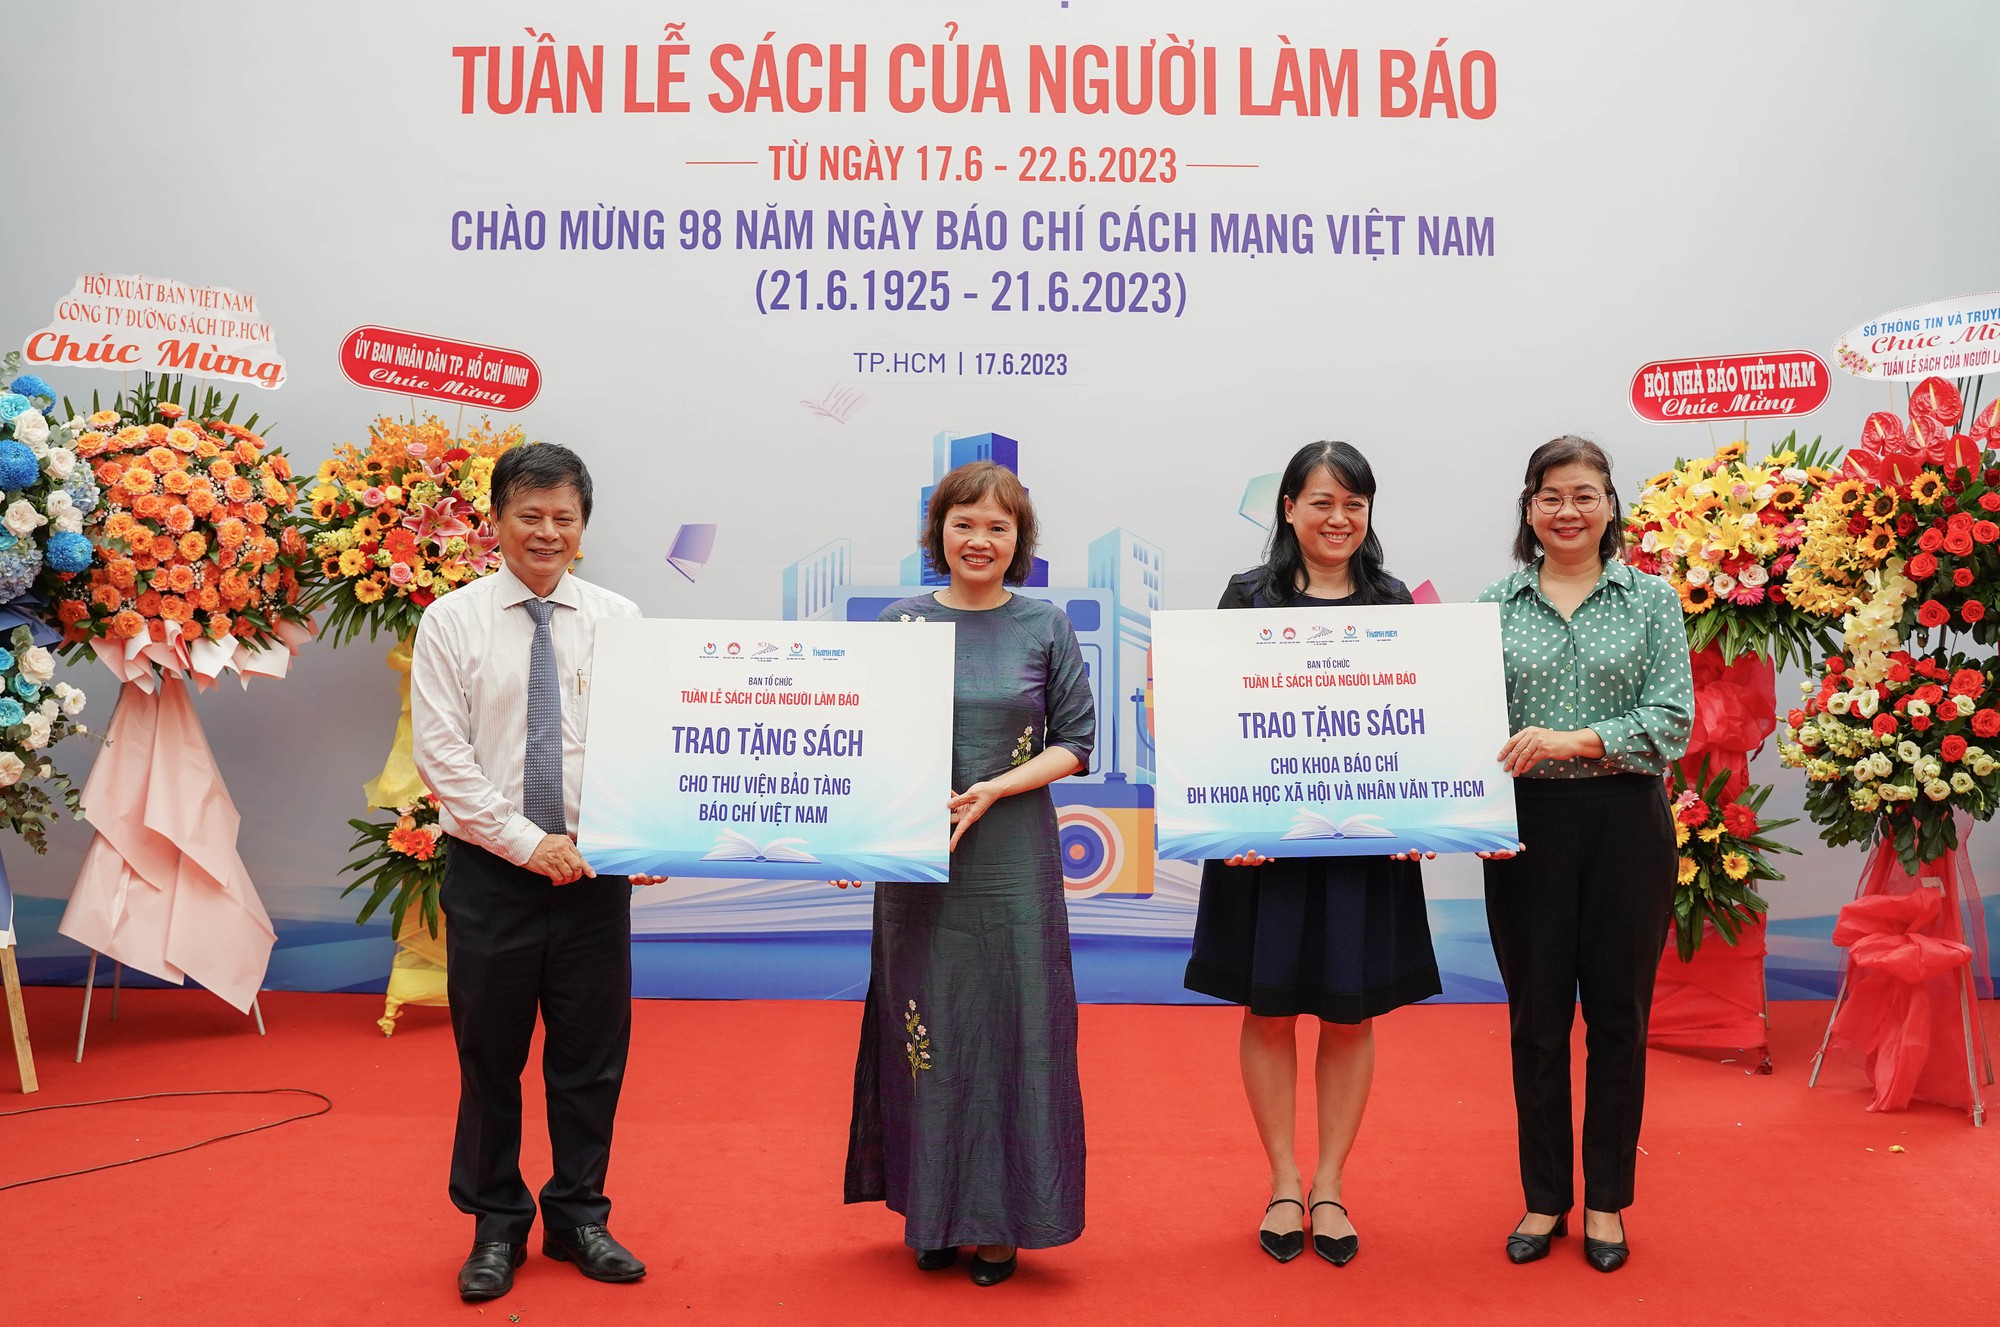 TP.HCM tổ chức tuần lễ sách nhân ngày Báo chí cách mạng Việt Nam - Ảnh 4.